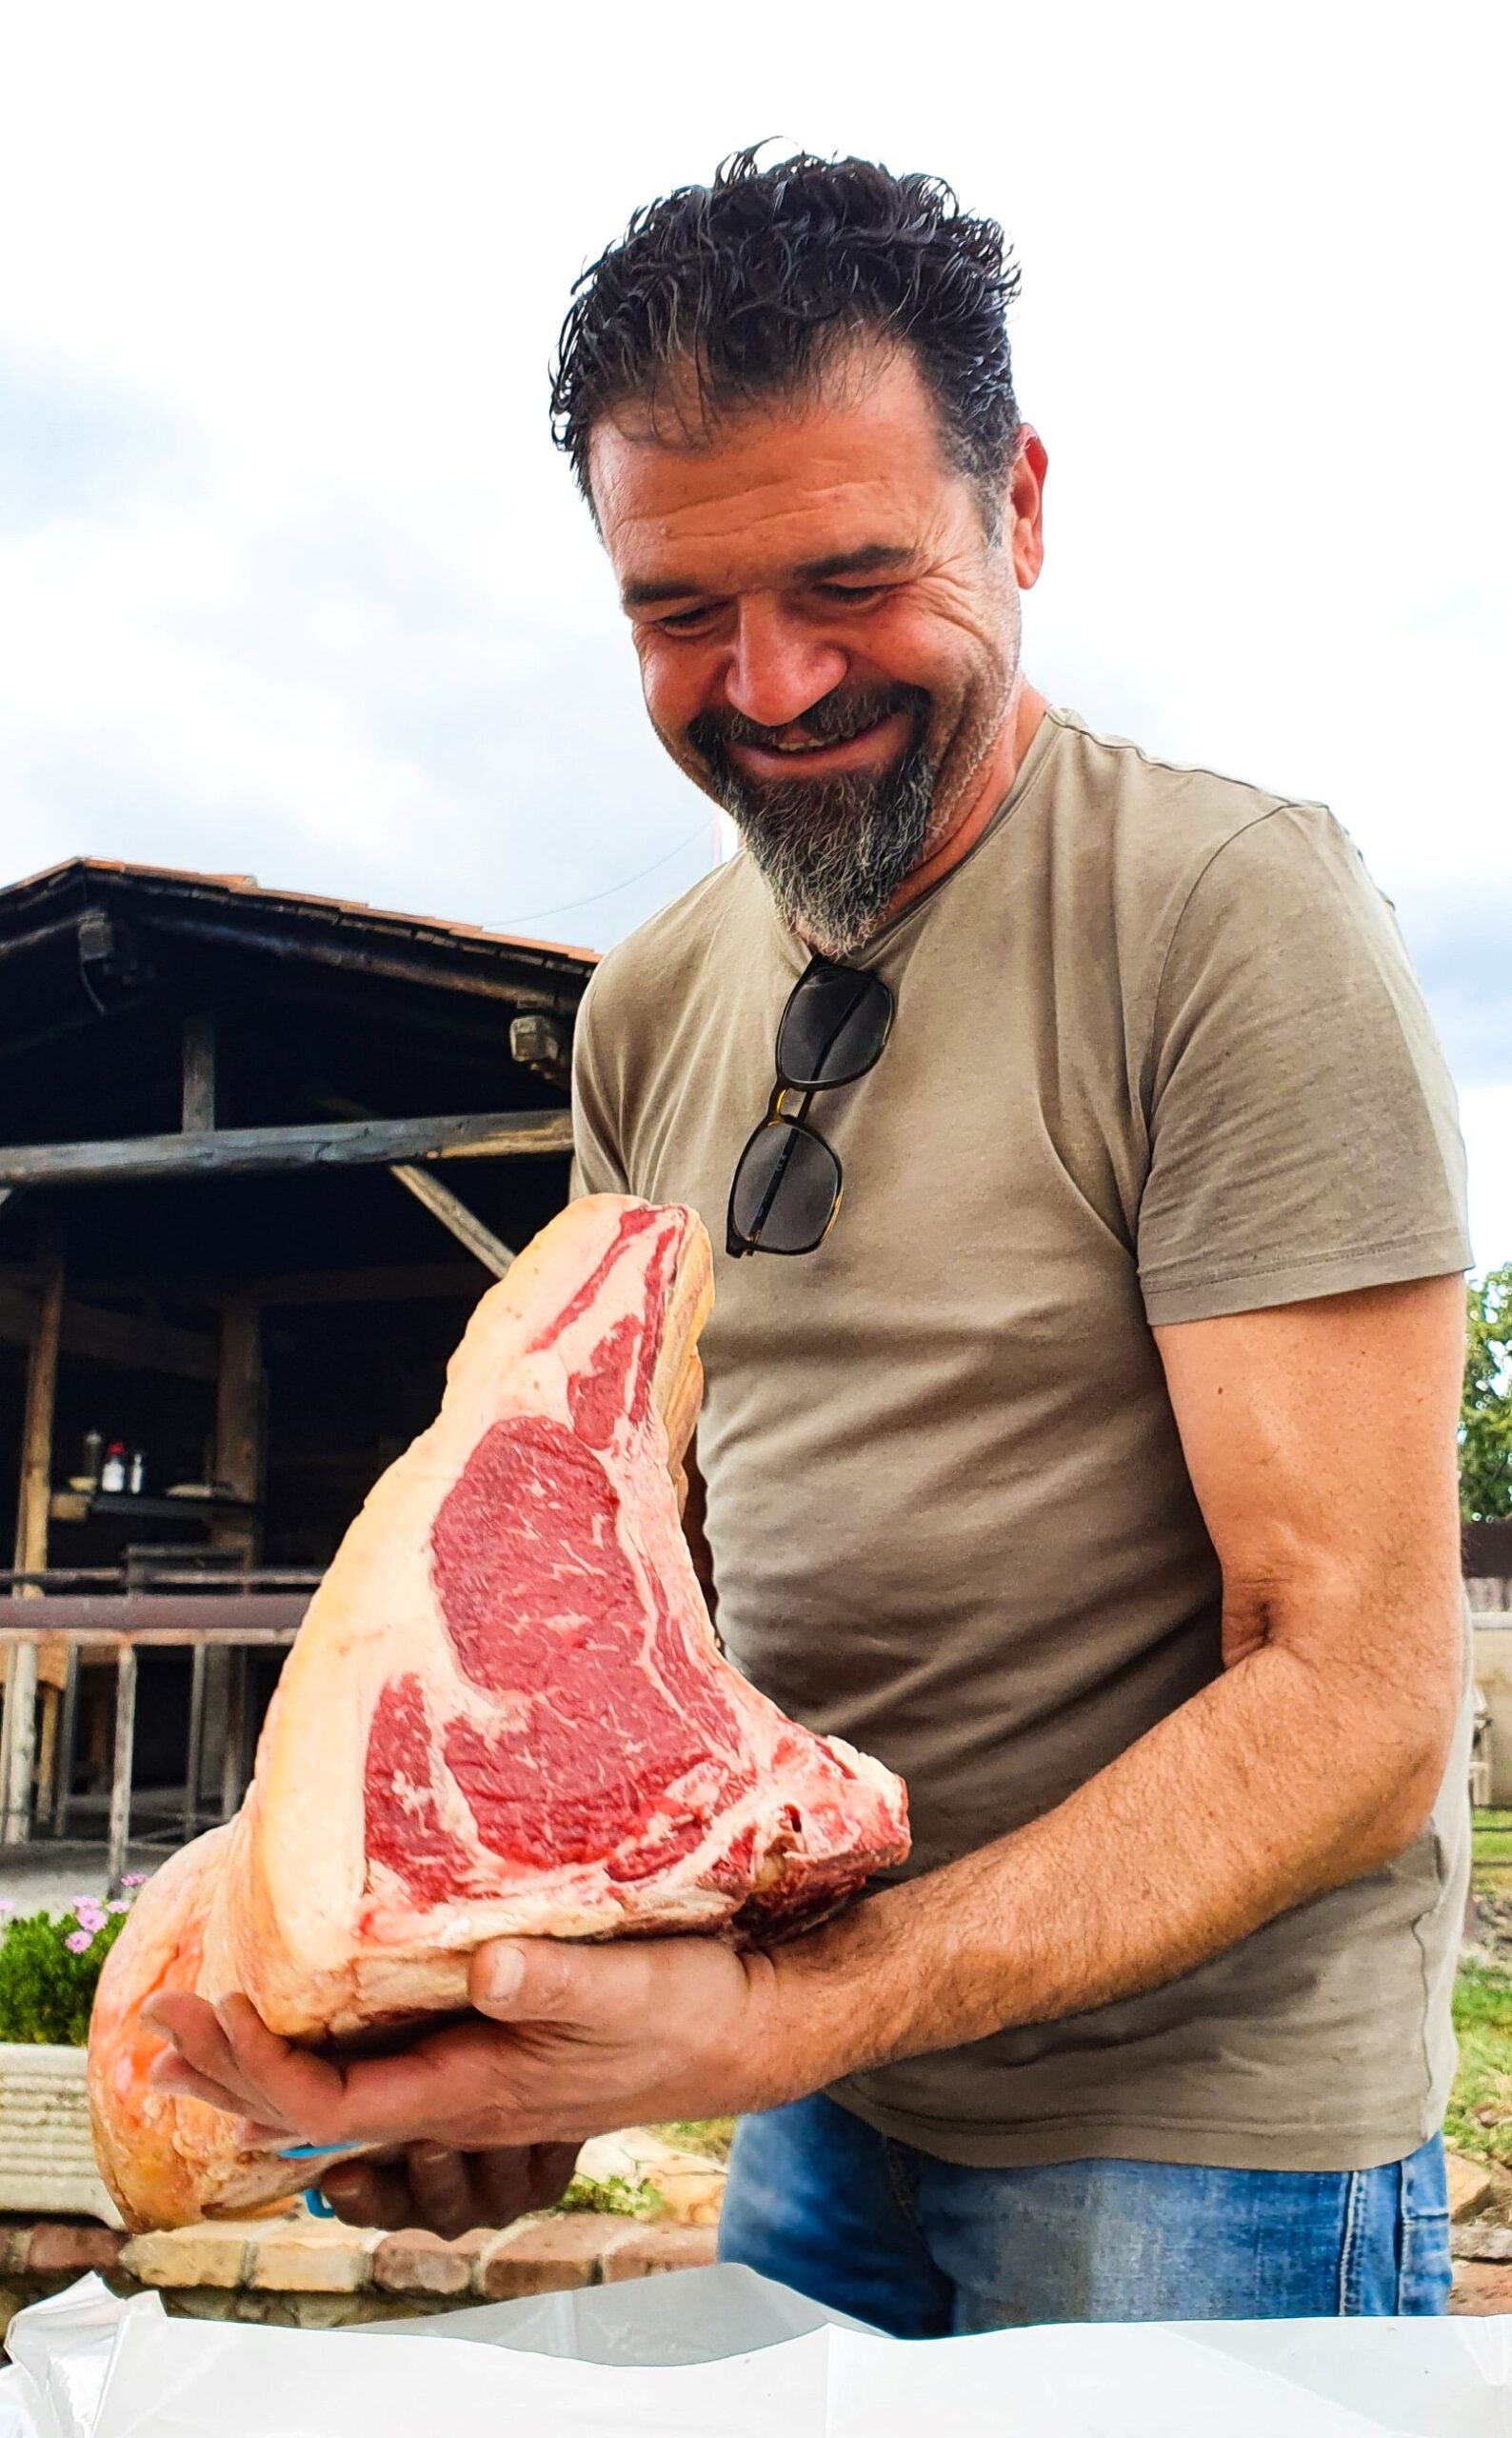 Giuseppe Verri felice al taglio della carne